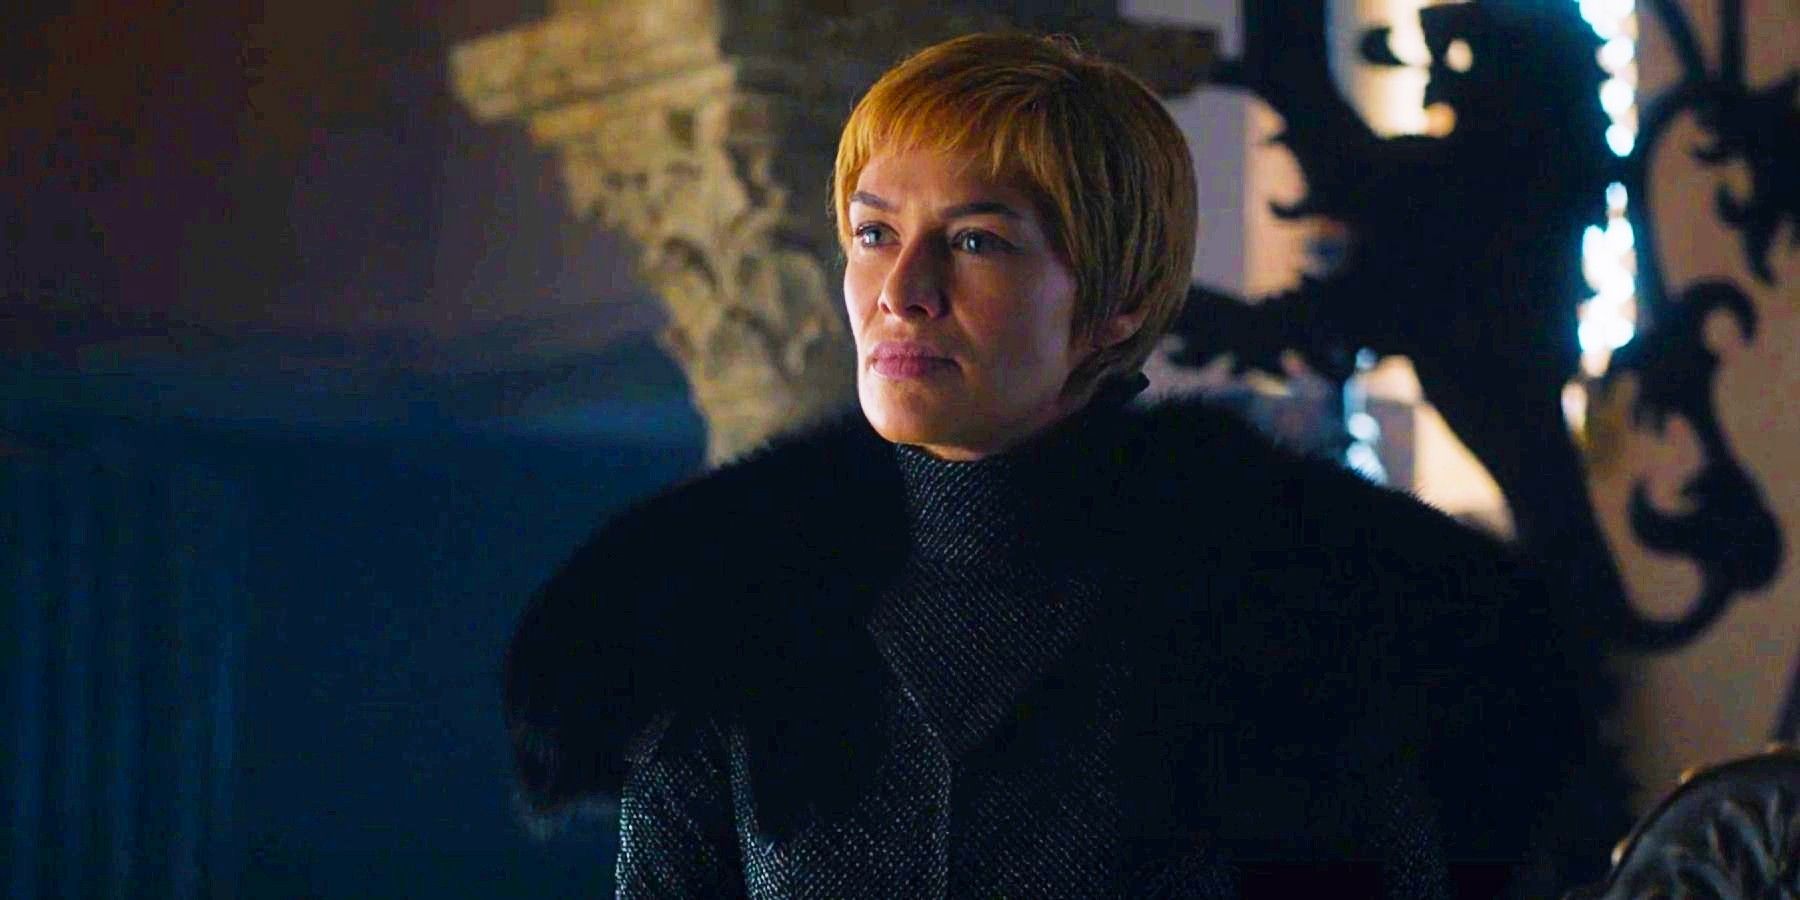 “Fue extraño”: Lena Headey reflexiona sobre la desaceleración de Game Of Thrones Mania